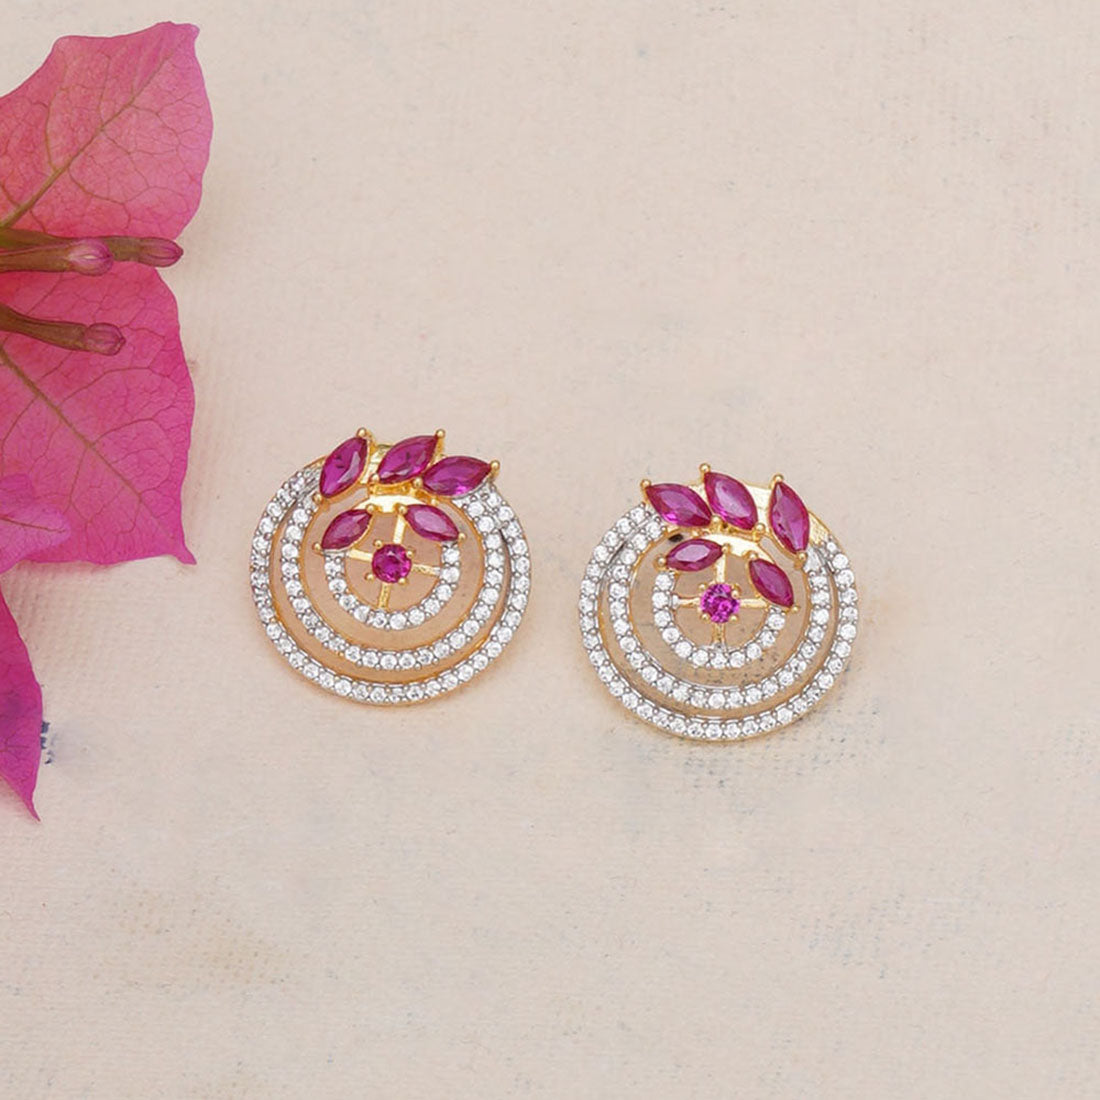 Spakling Essentials Chic Circular Stud Earrings with Gemstones